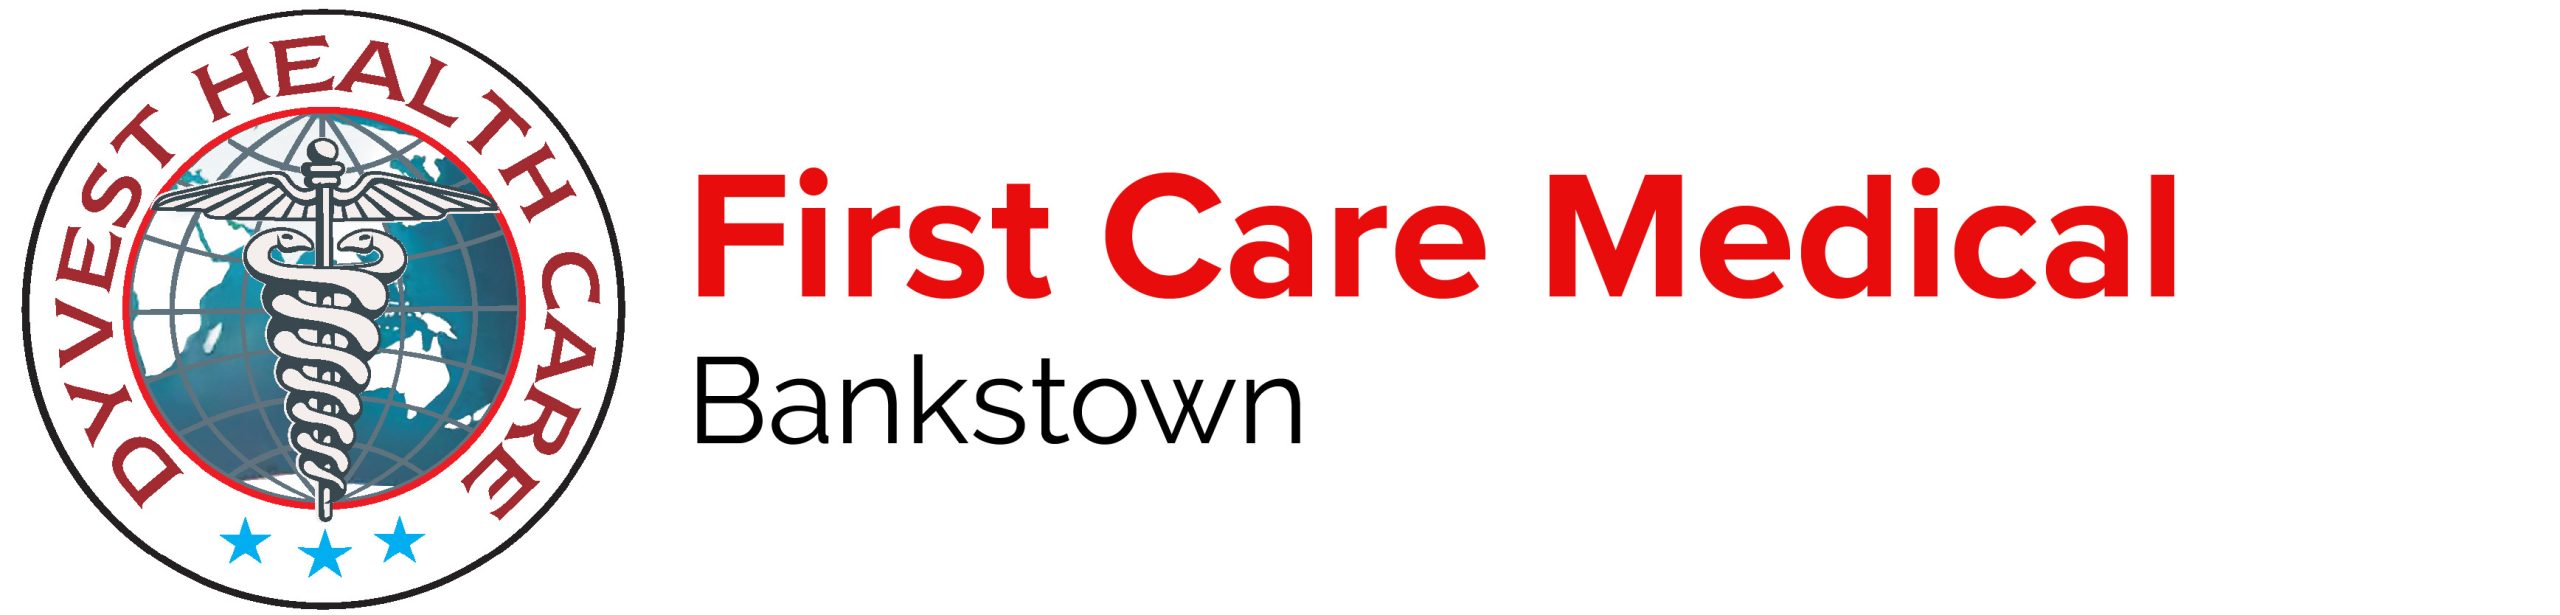 First Care Medical Bankstown Logo